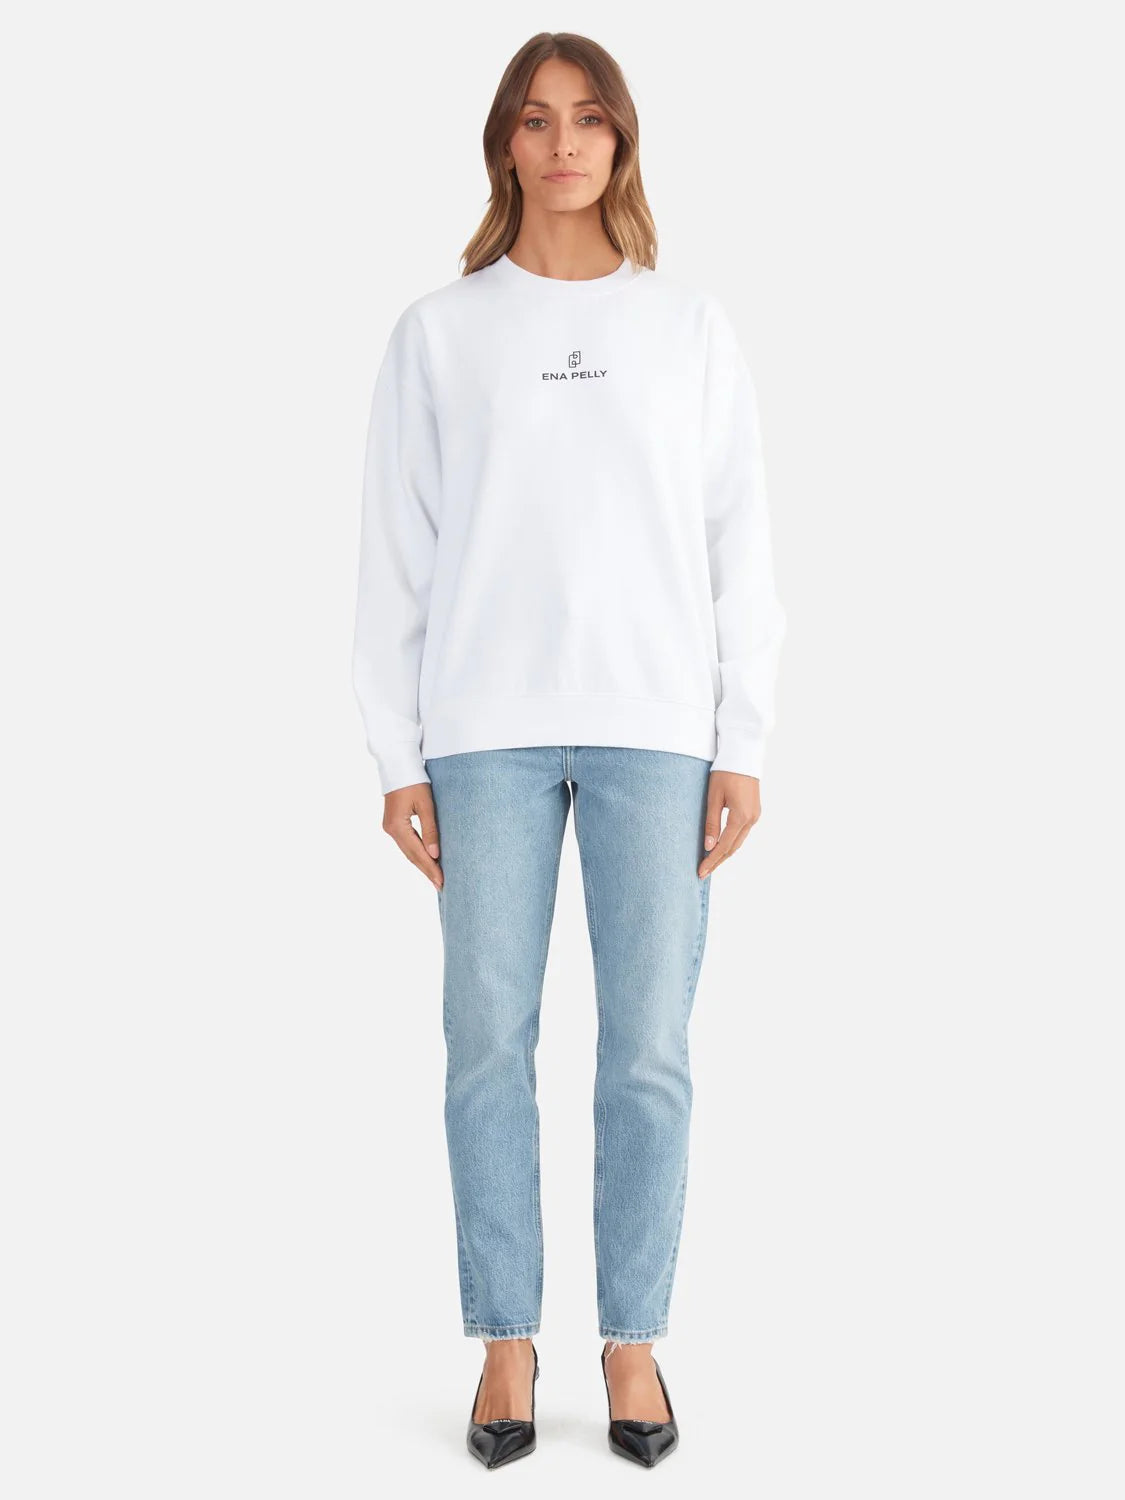 Lexi Monogram Sweater - White